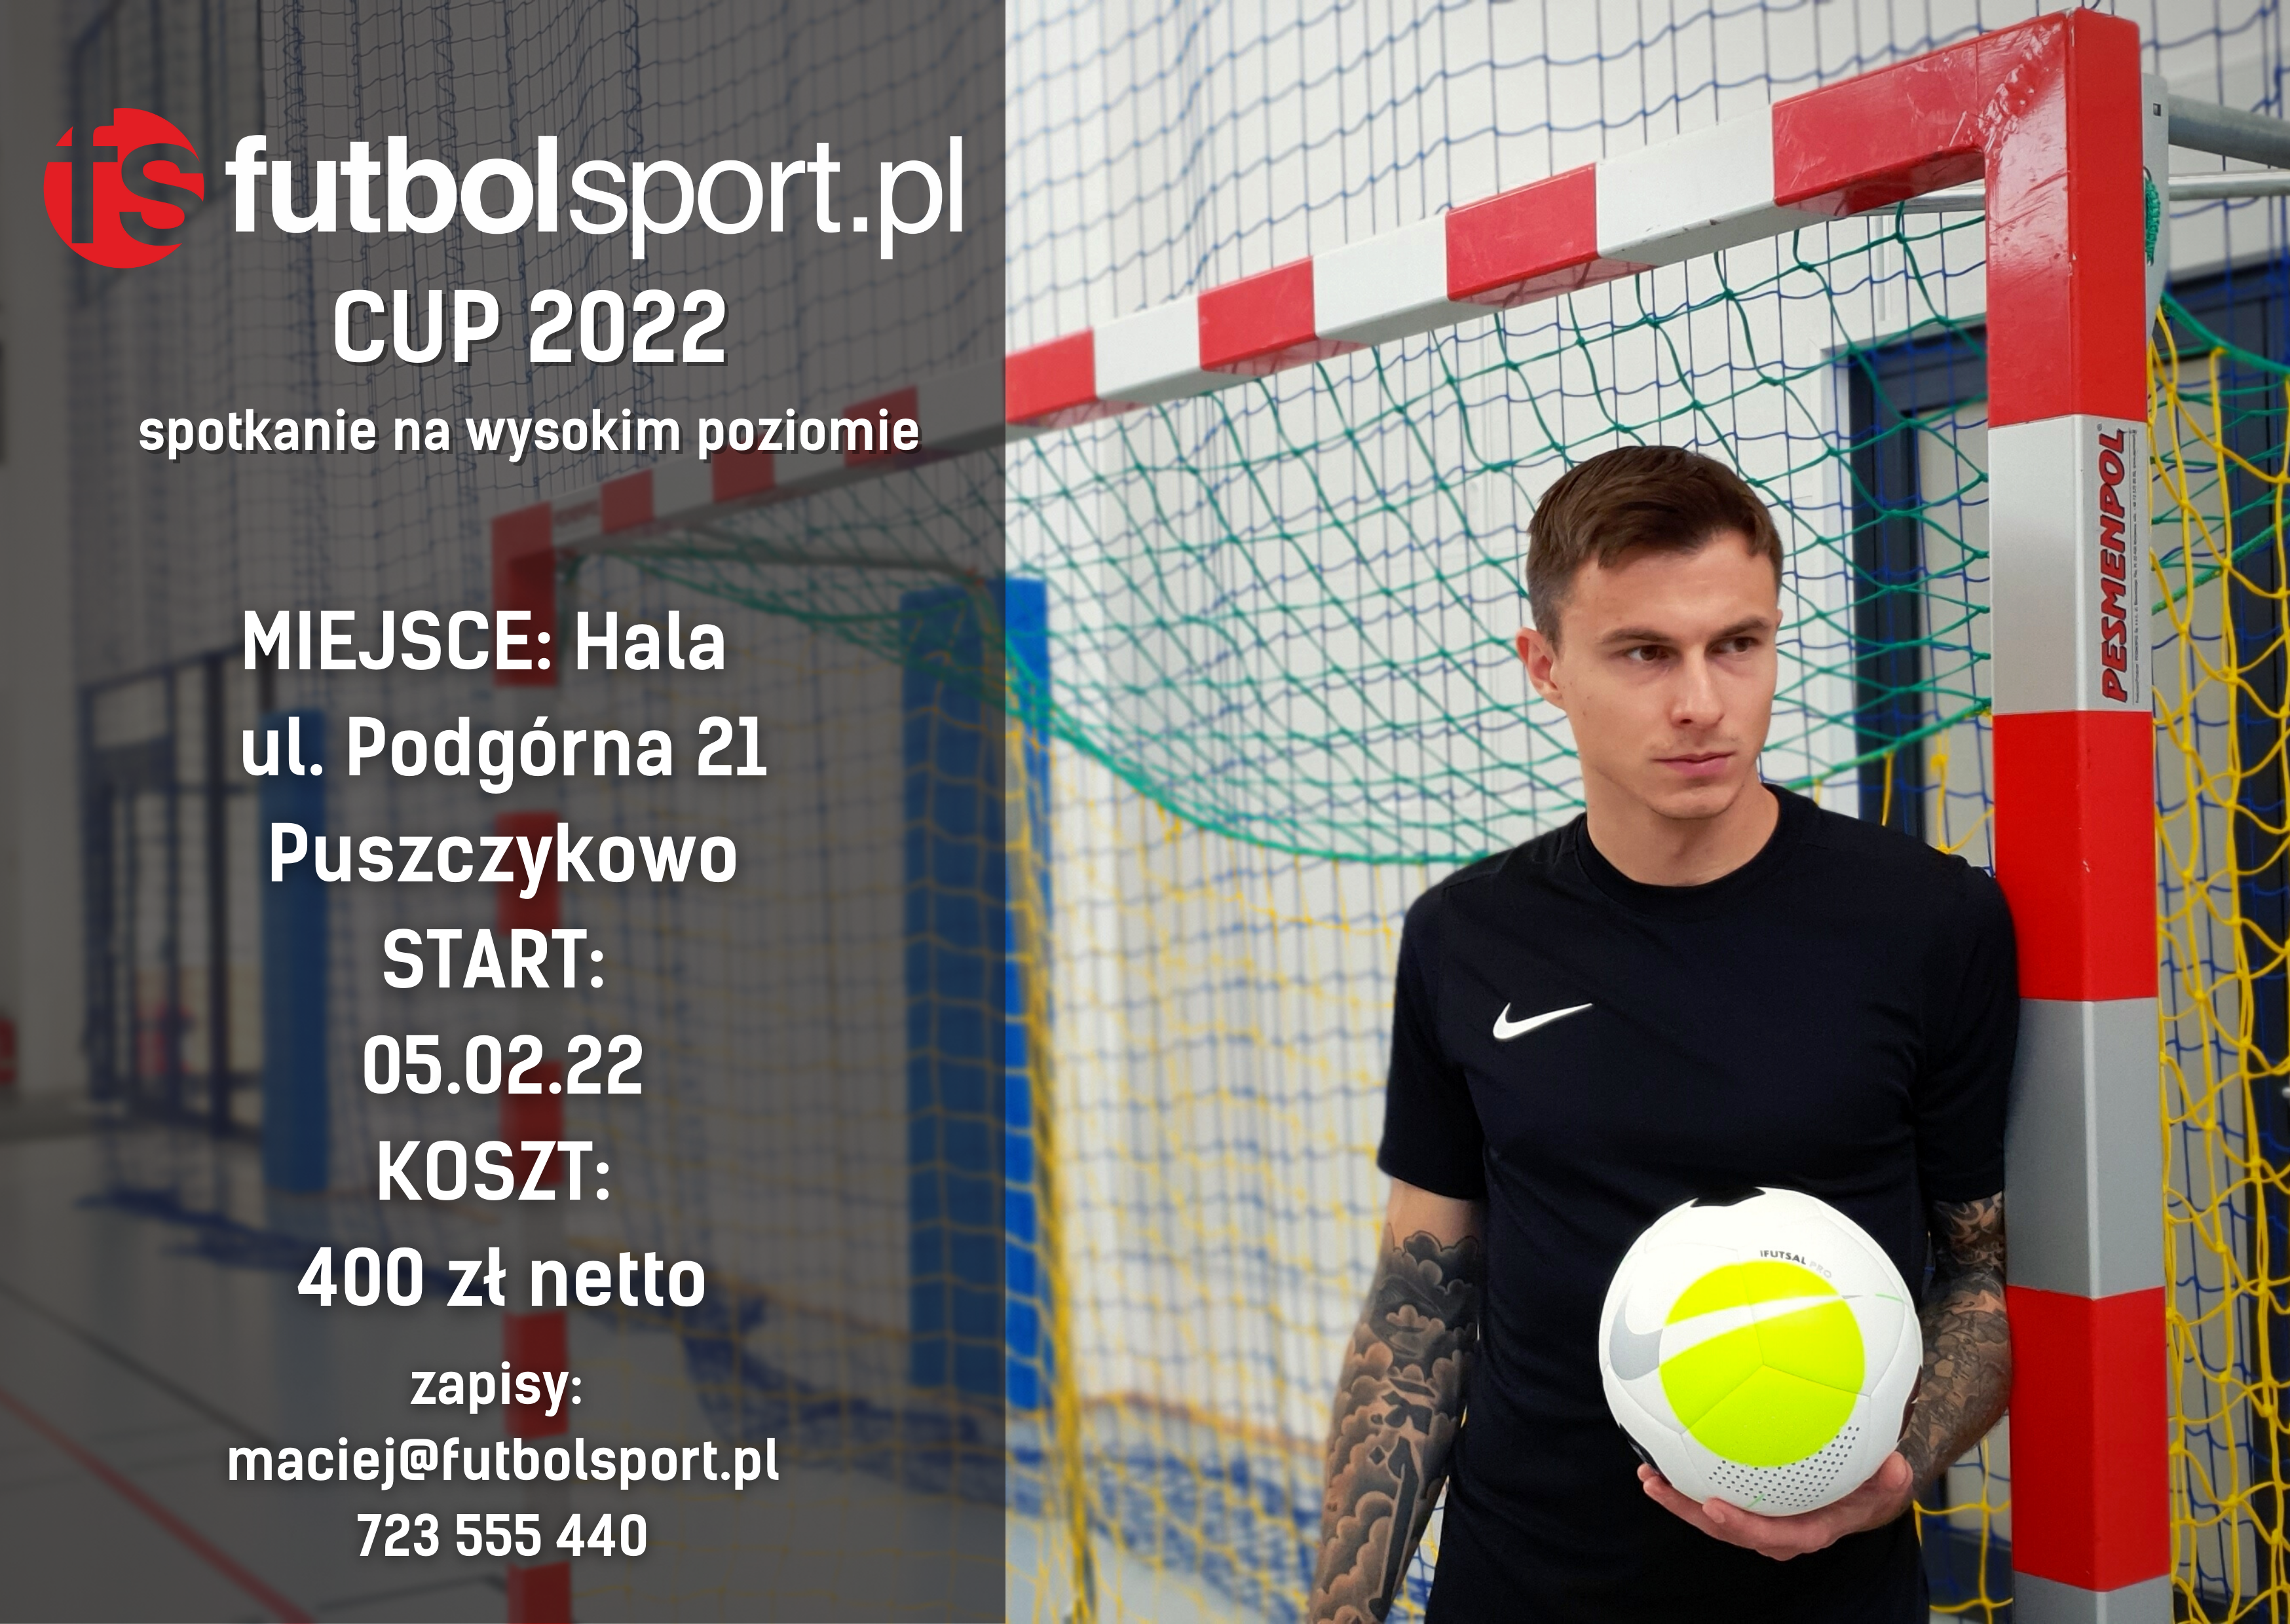 Podział na grupy i terminarz futbolsport.pl Cup 2022